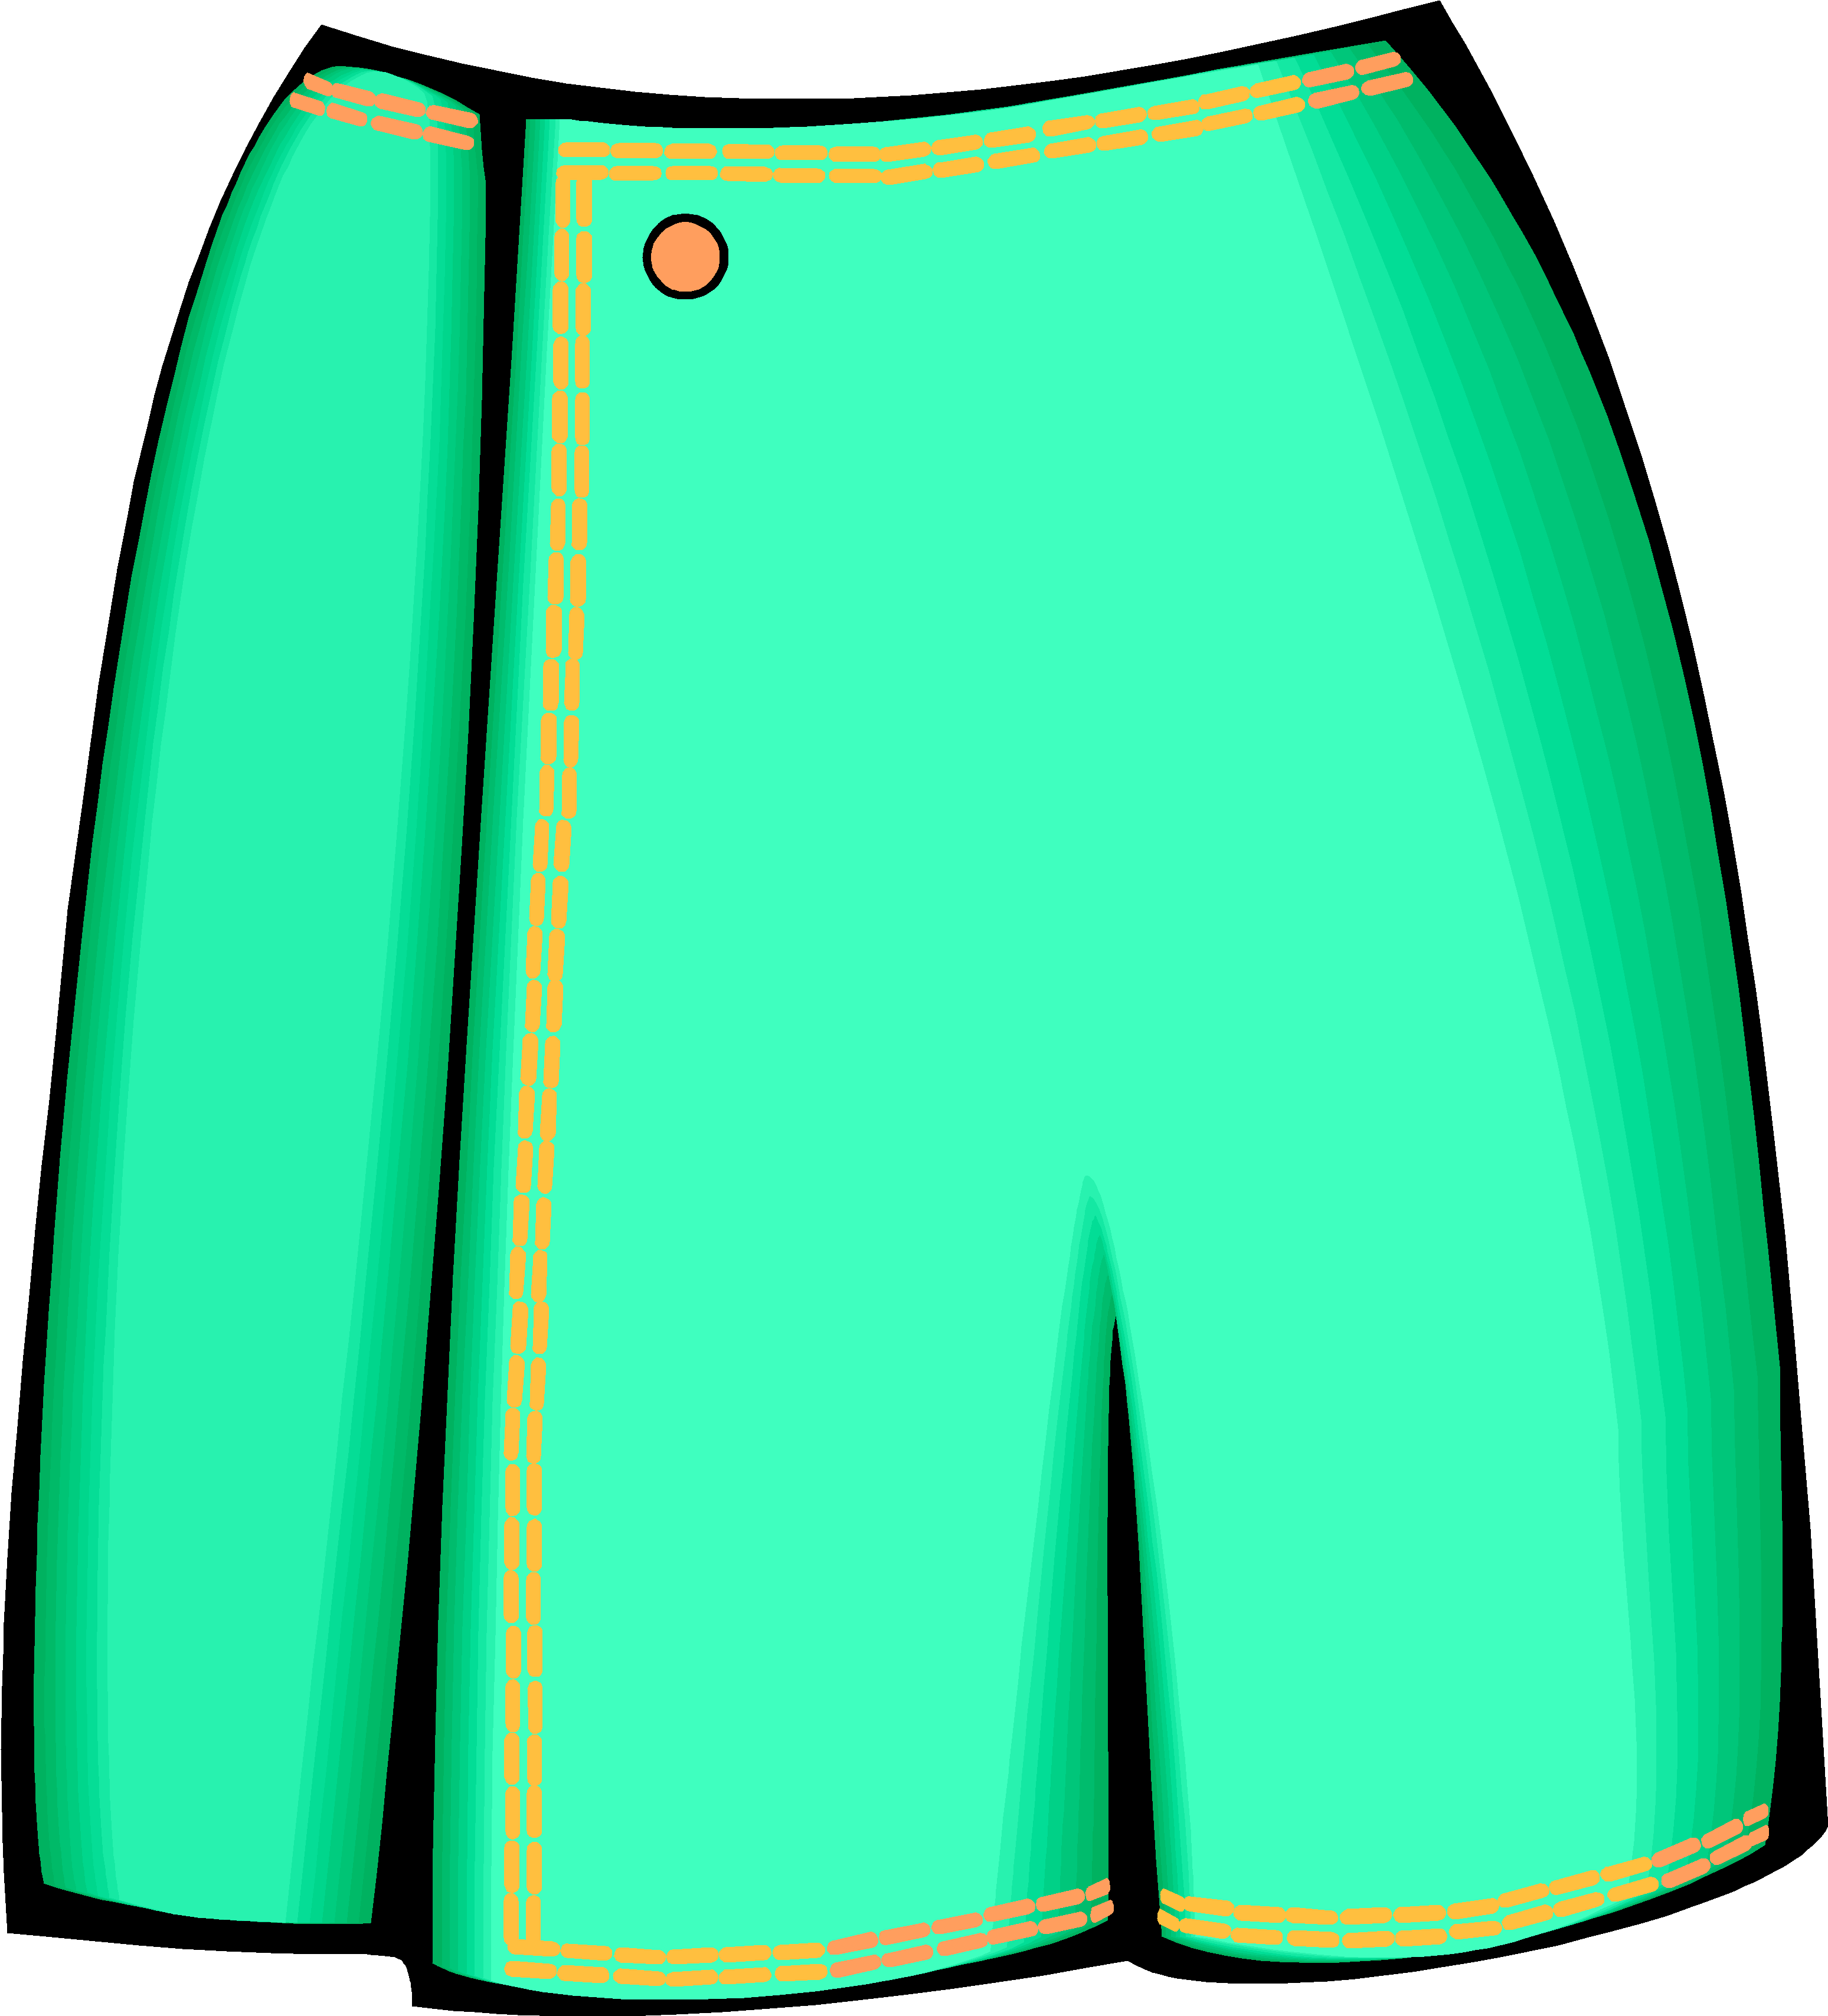 Green Skirt Clipart (3225x3559)